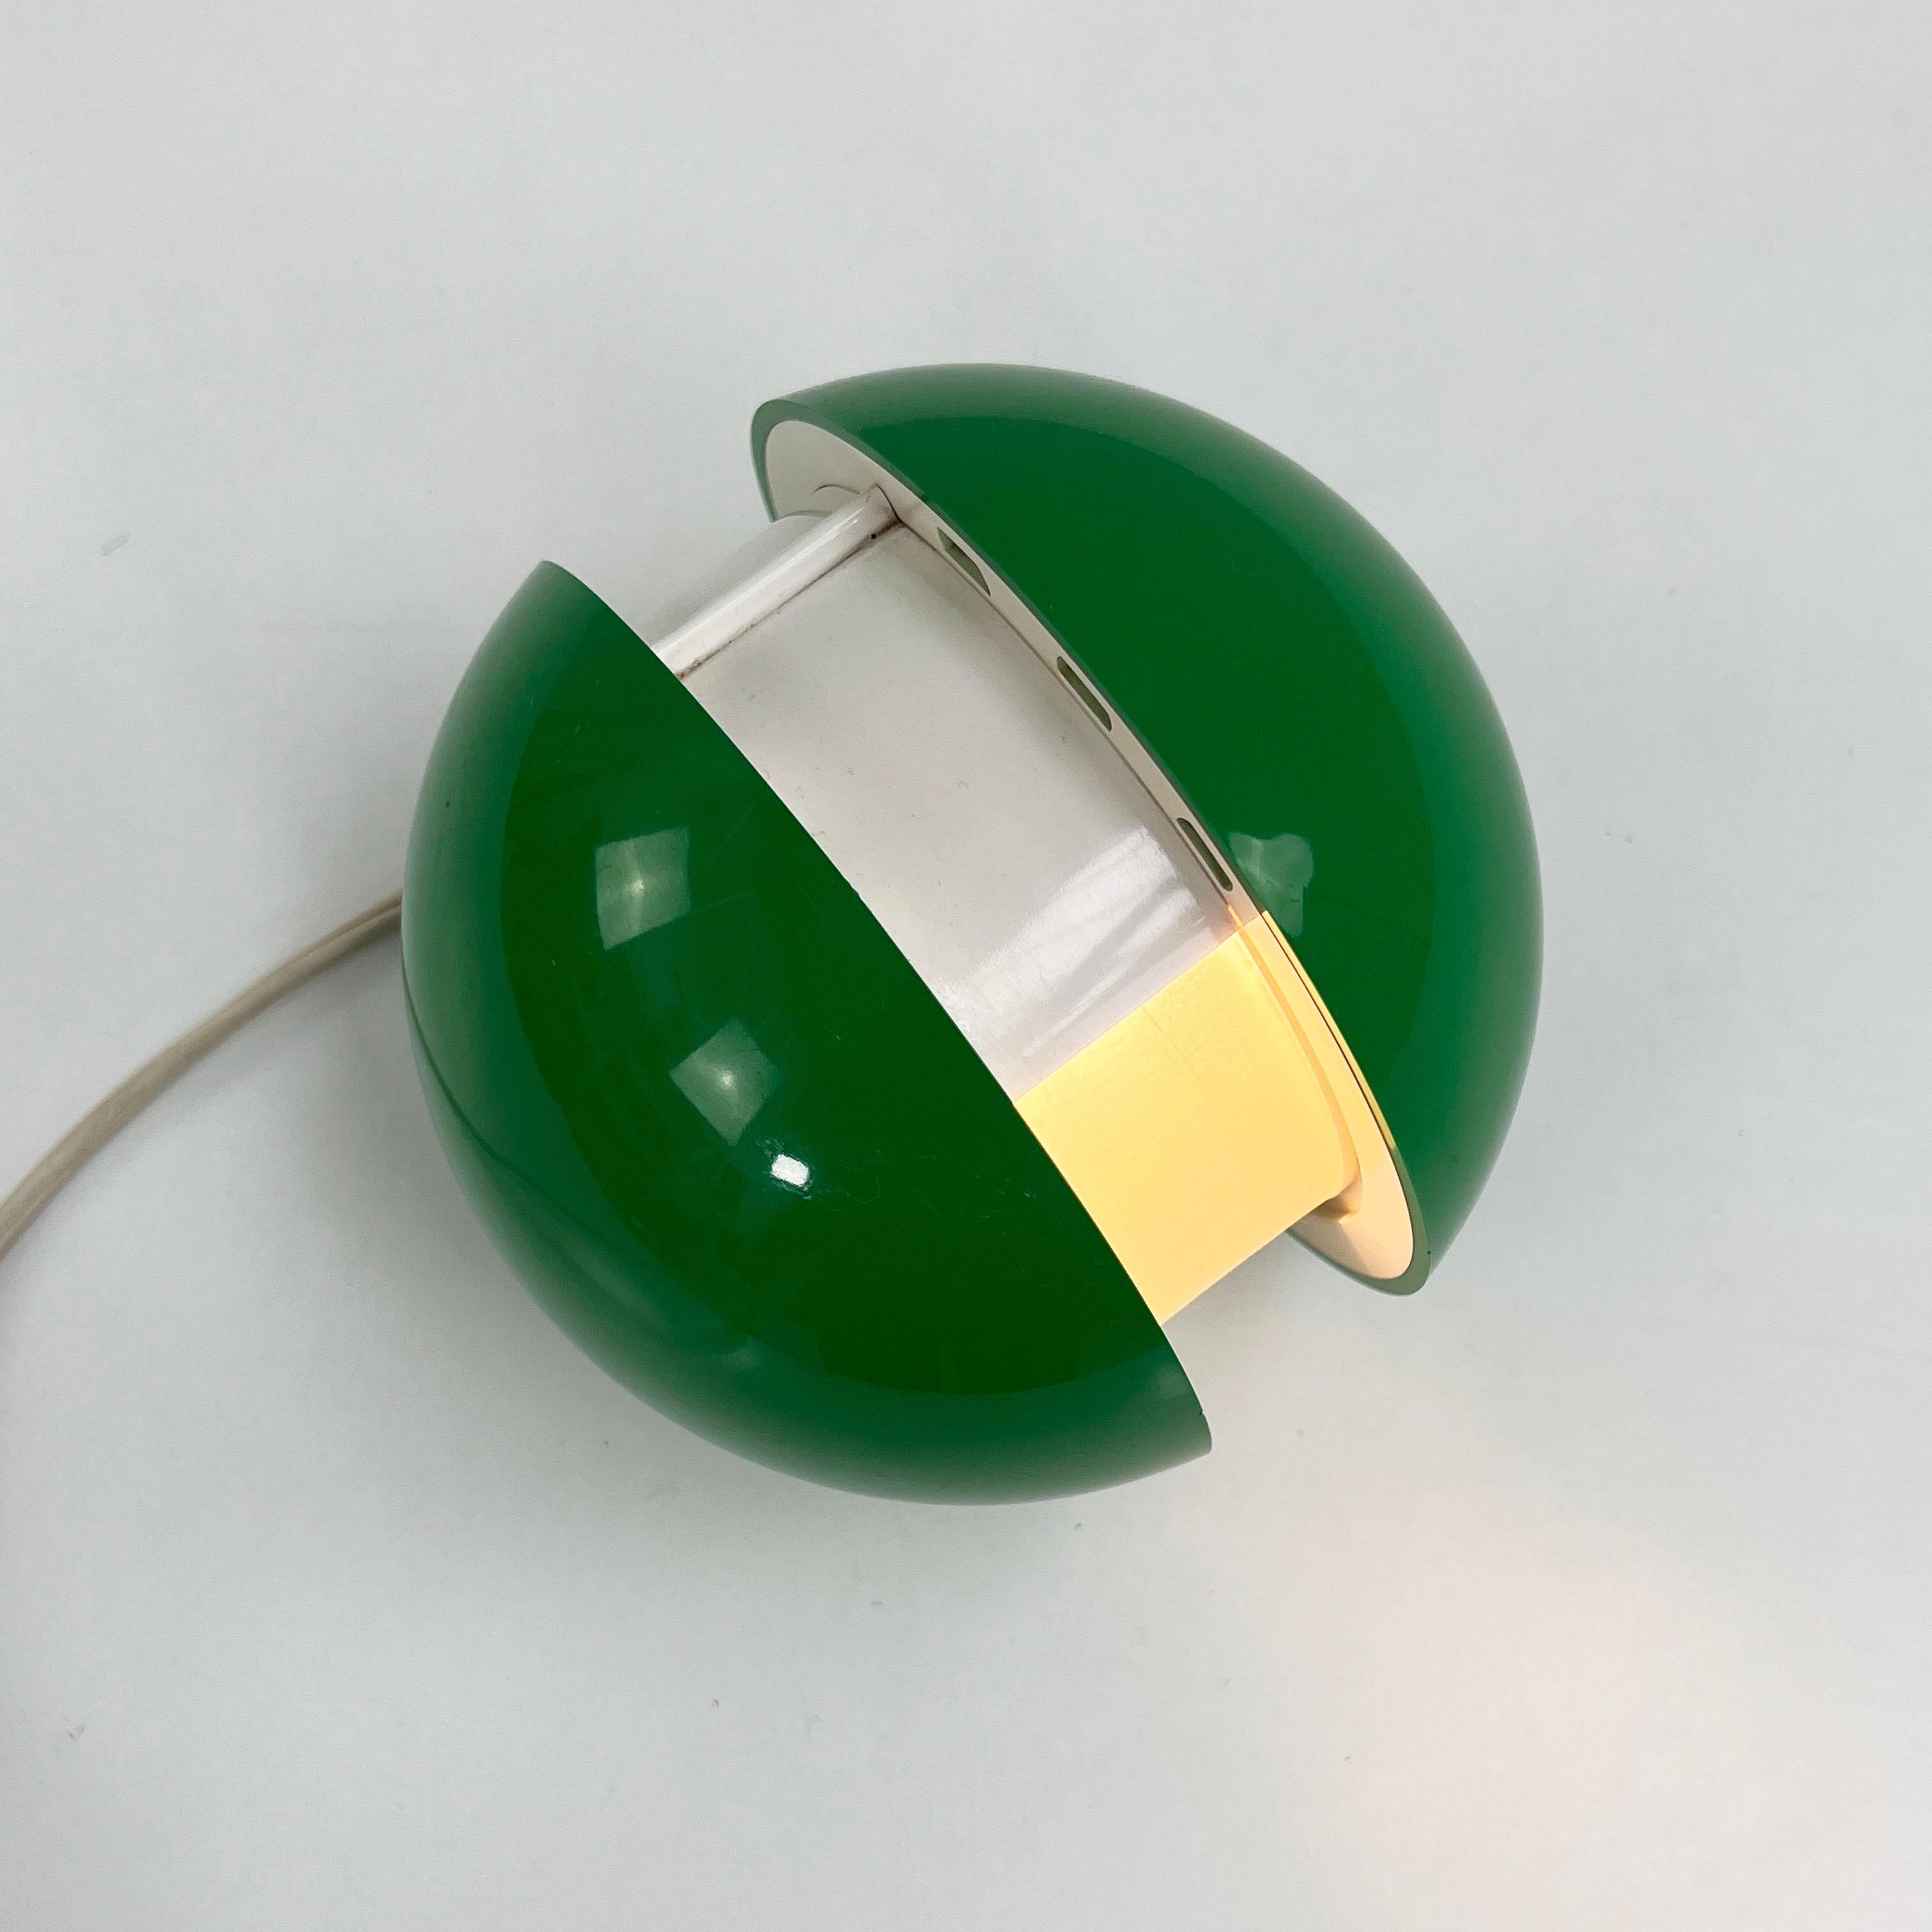 Italian Green GEA Lamp by Gianni Colombo for Arredoluce, 1960s